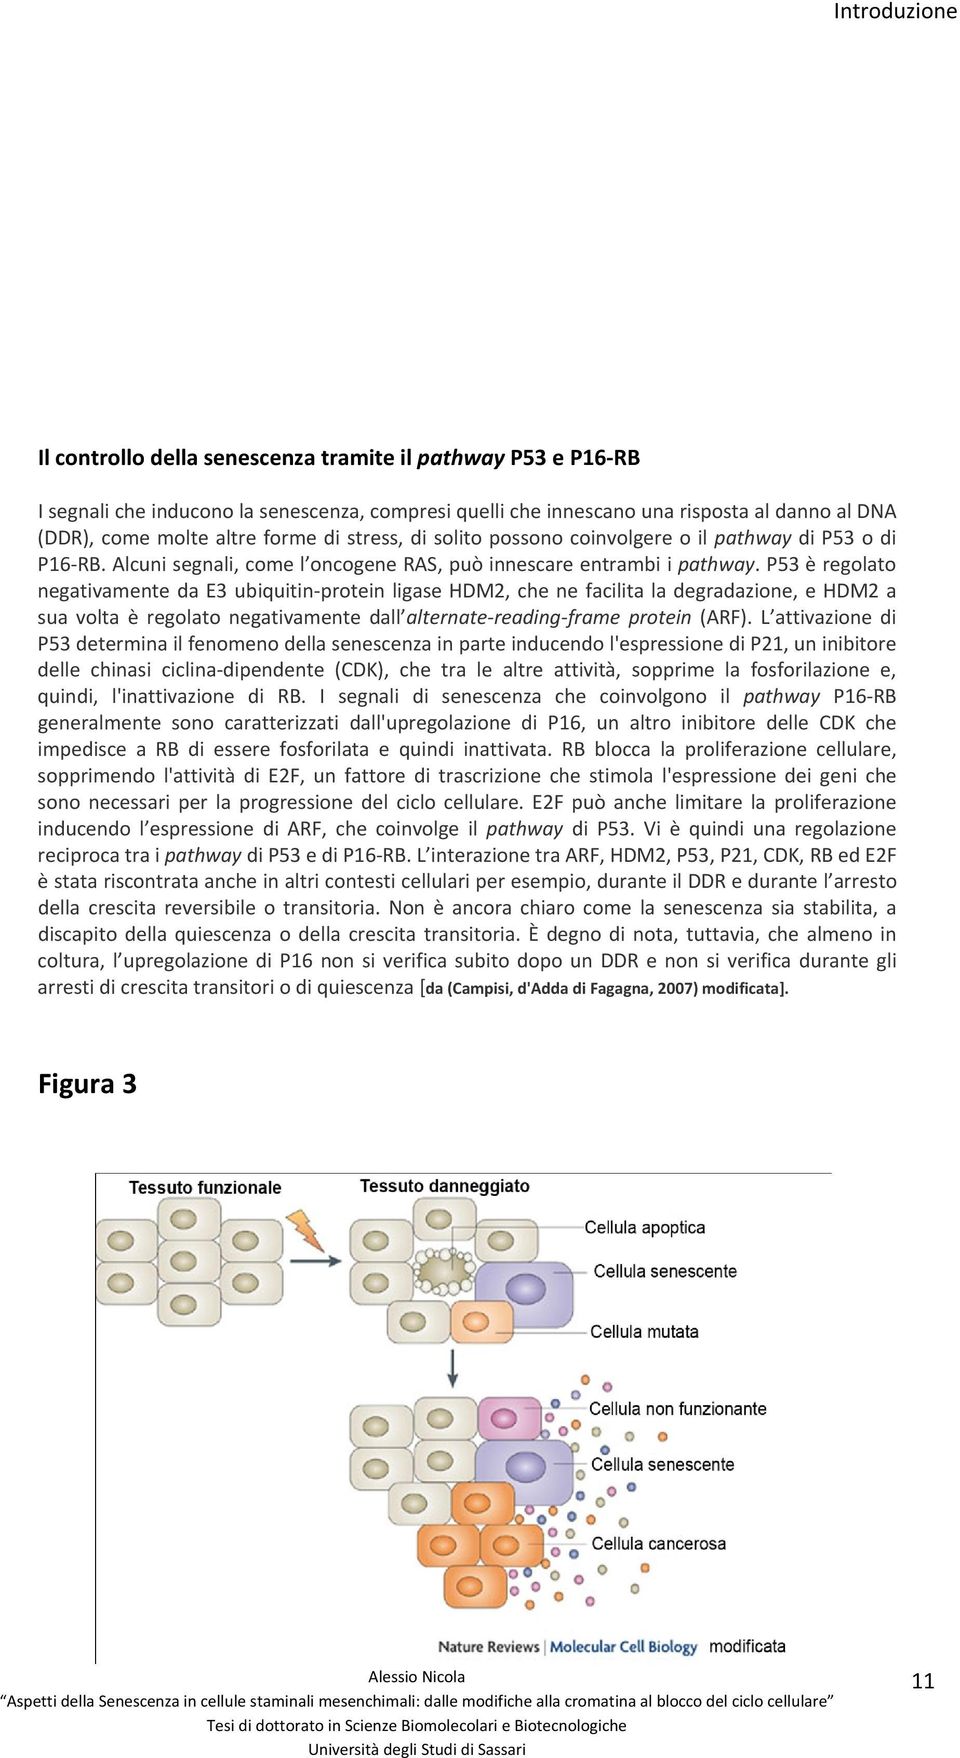 P53 è regolato negativamente da E3 ubiquitin protein ligase HDM2, che ne facilita la degradazione, e HDM2 a sua volta è regolato negativamente dall alternate reading frame protein (ARF).